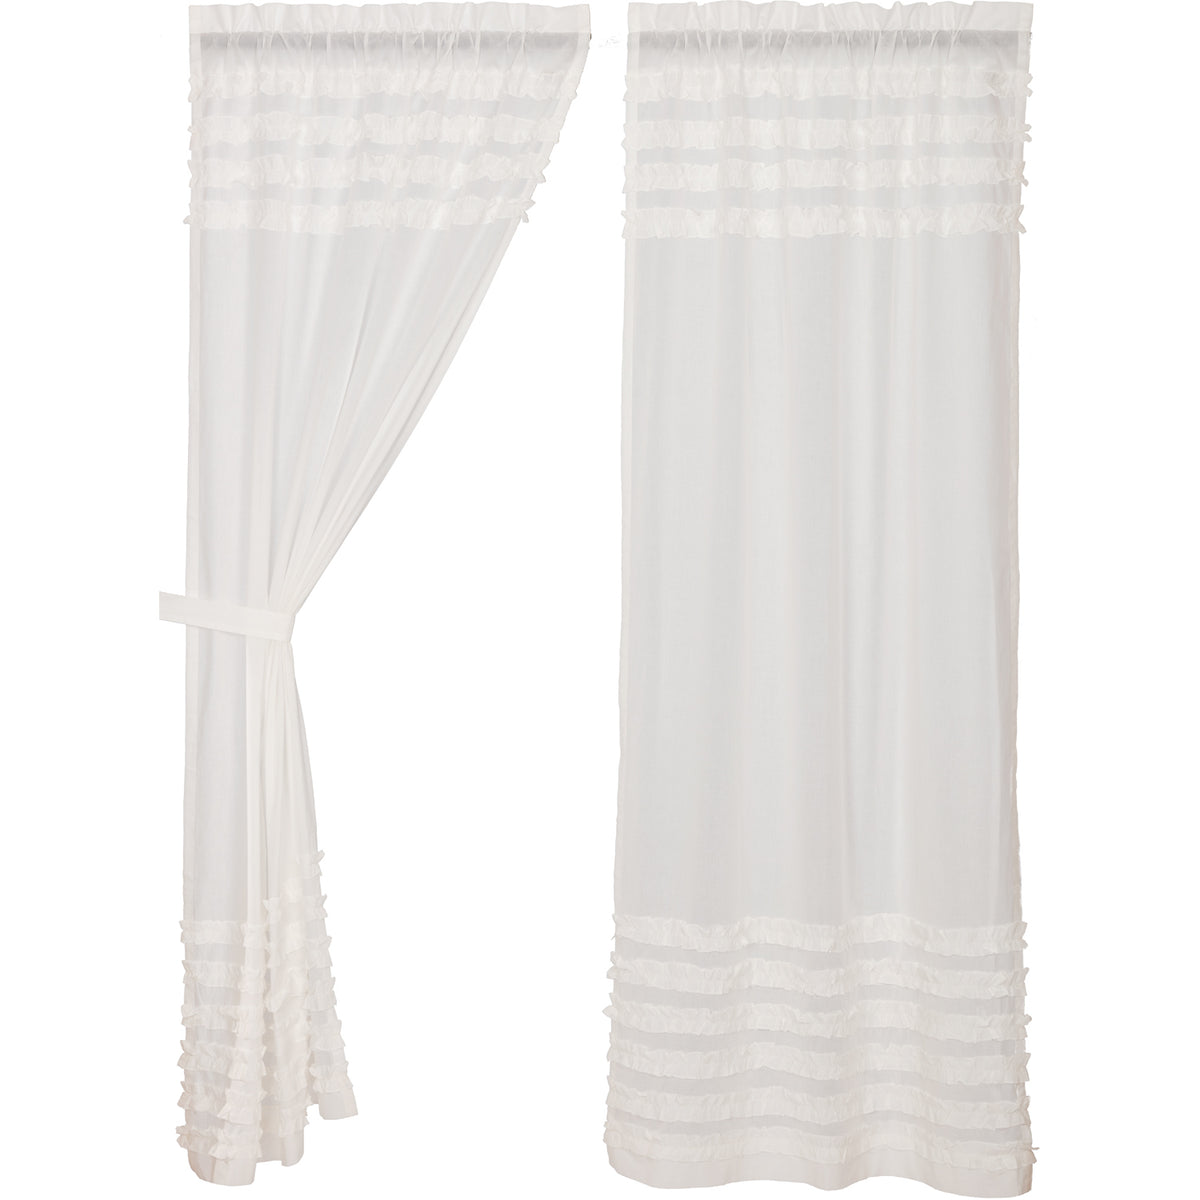 White Ruffled Sheer Petticoat Panel Set of 2 84x40